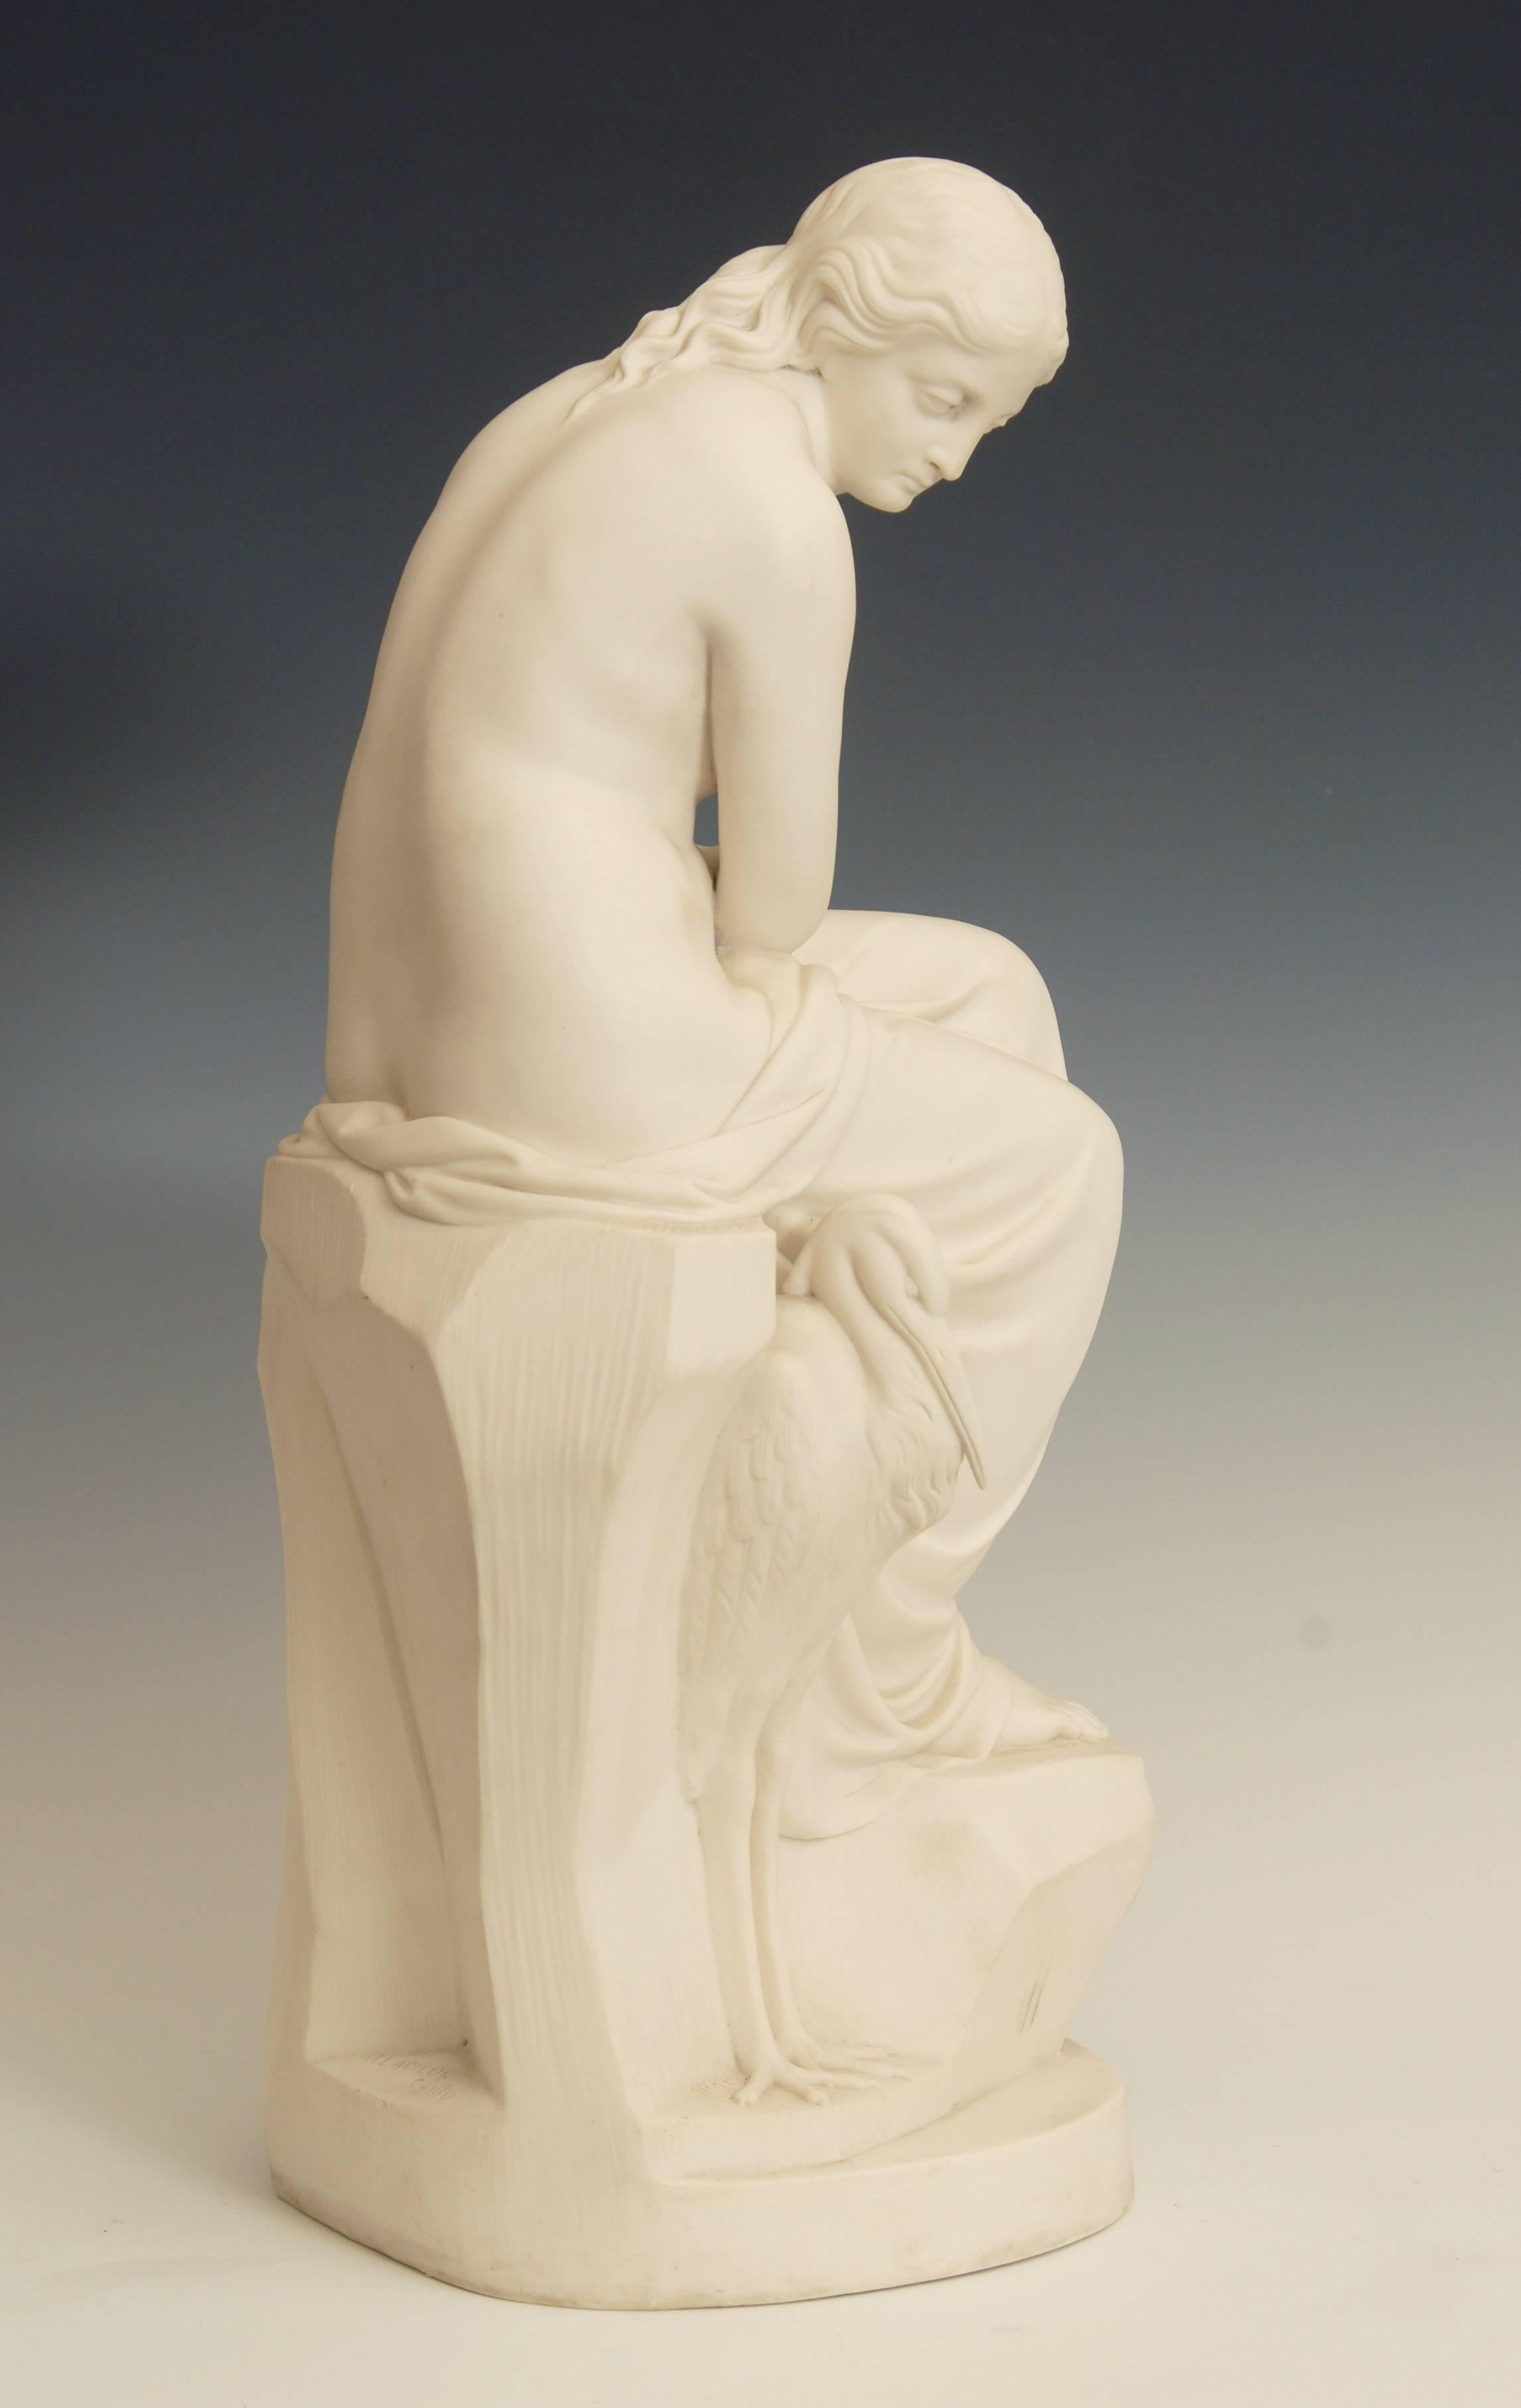 Minton Art Union Parian Figure, 'Solitude' by J. Lawlor, 1852 2